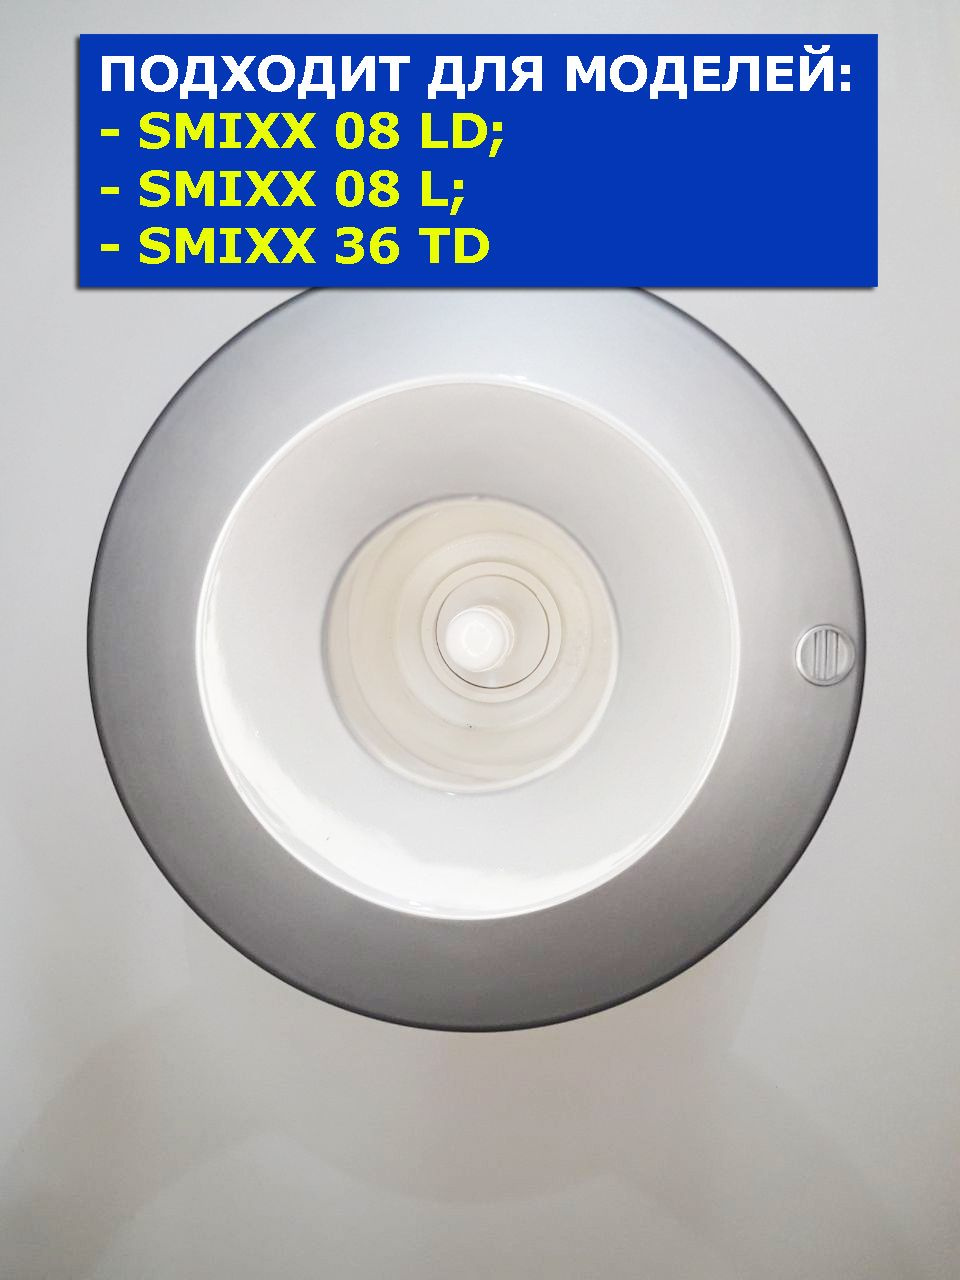 Бутылеприемник кулера для воды SMixx 26TD серебристый